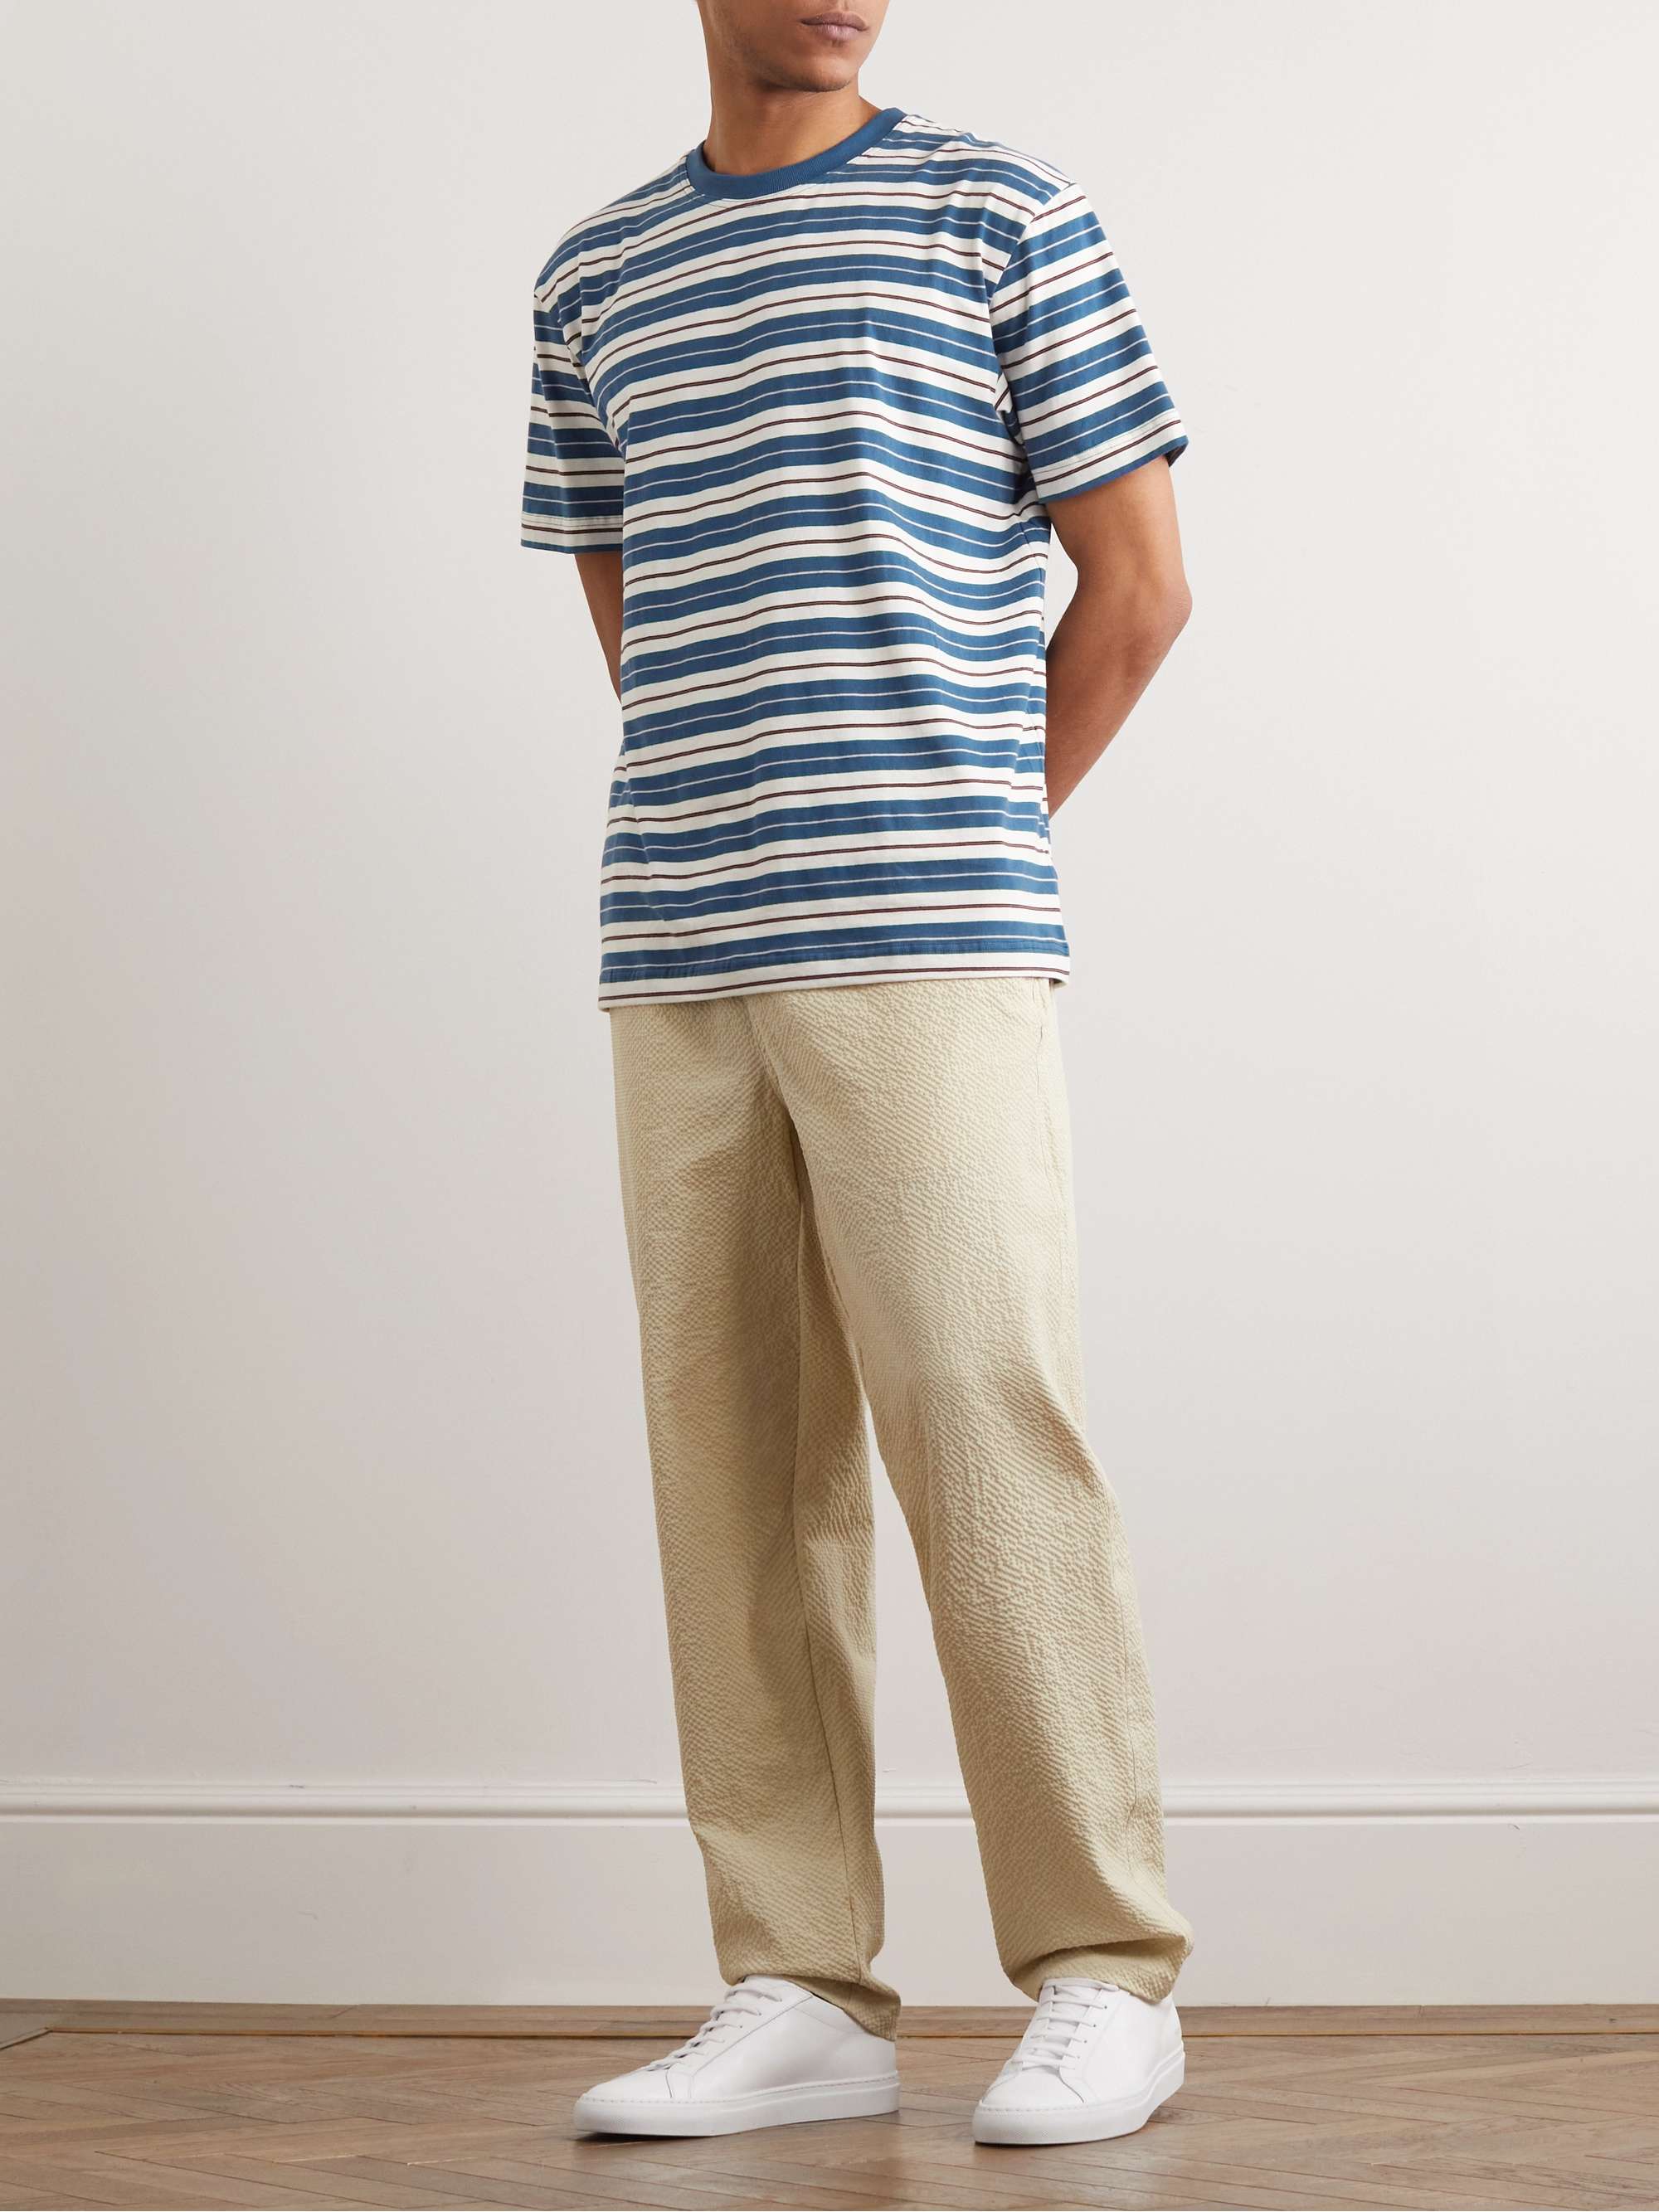 HOWLIN' Striped Cotton-Jersey T-Shirt